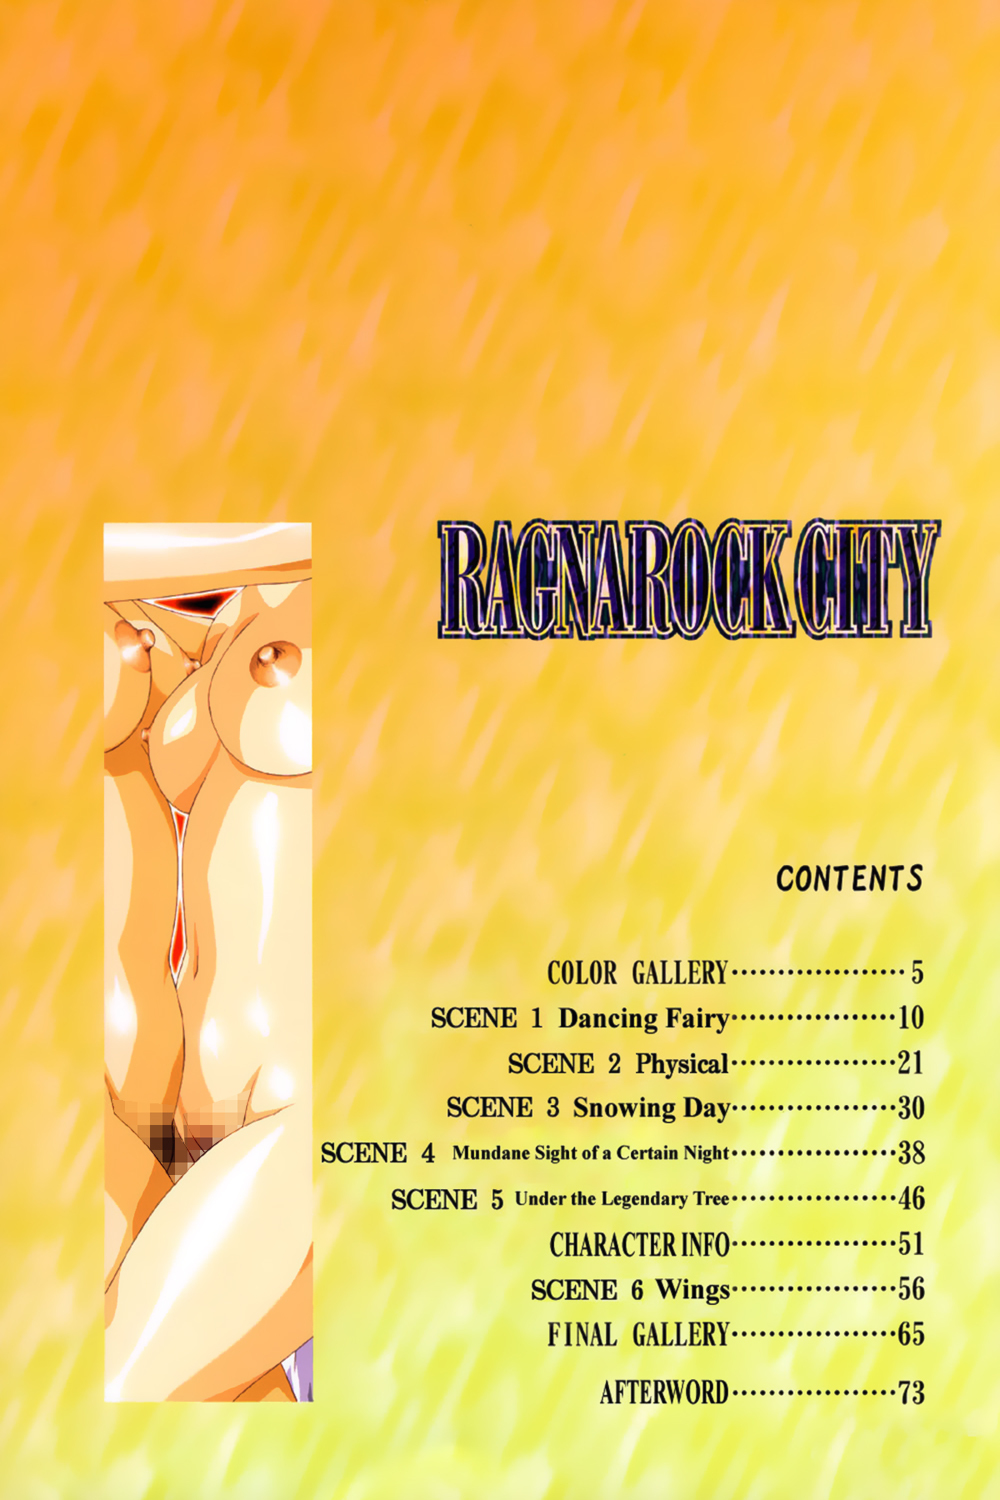 [Satoshi Urushihara] Ragnarock City [English] page 16 full